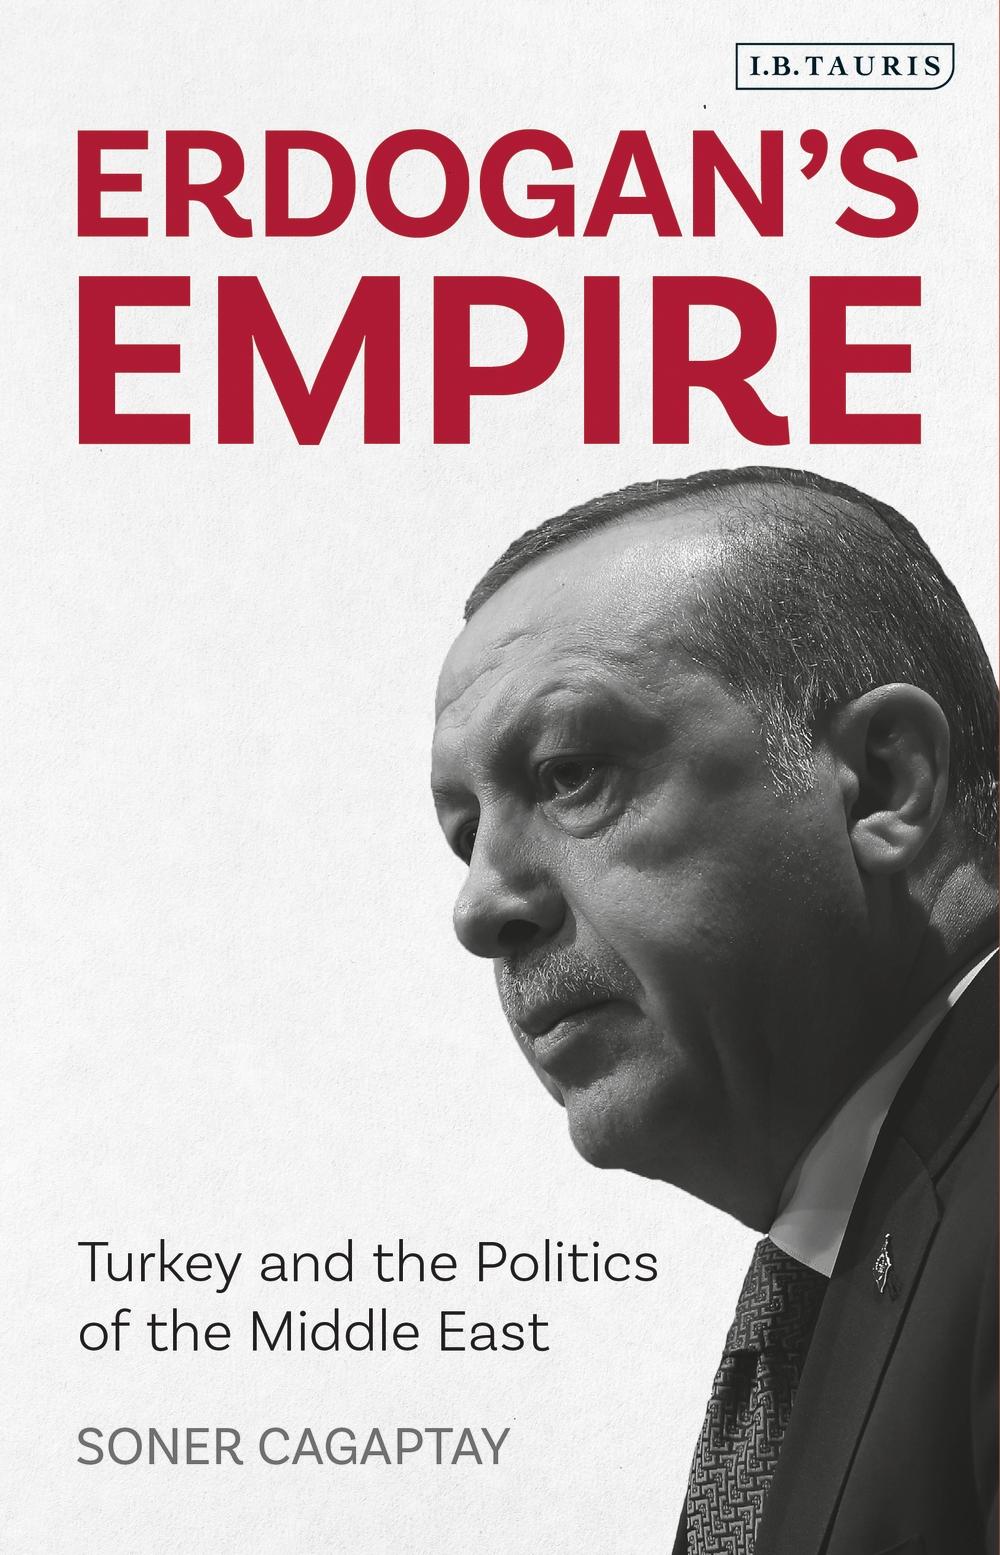 Erdogan's Empire - Soner Cagaptay